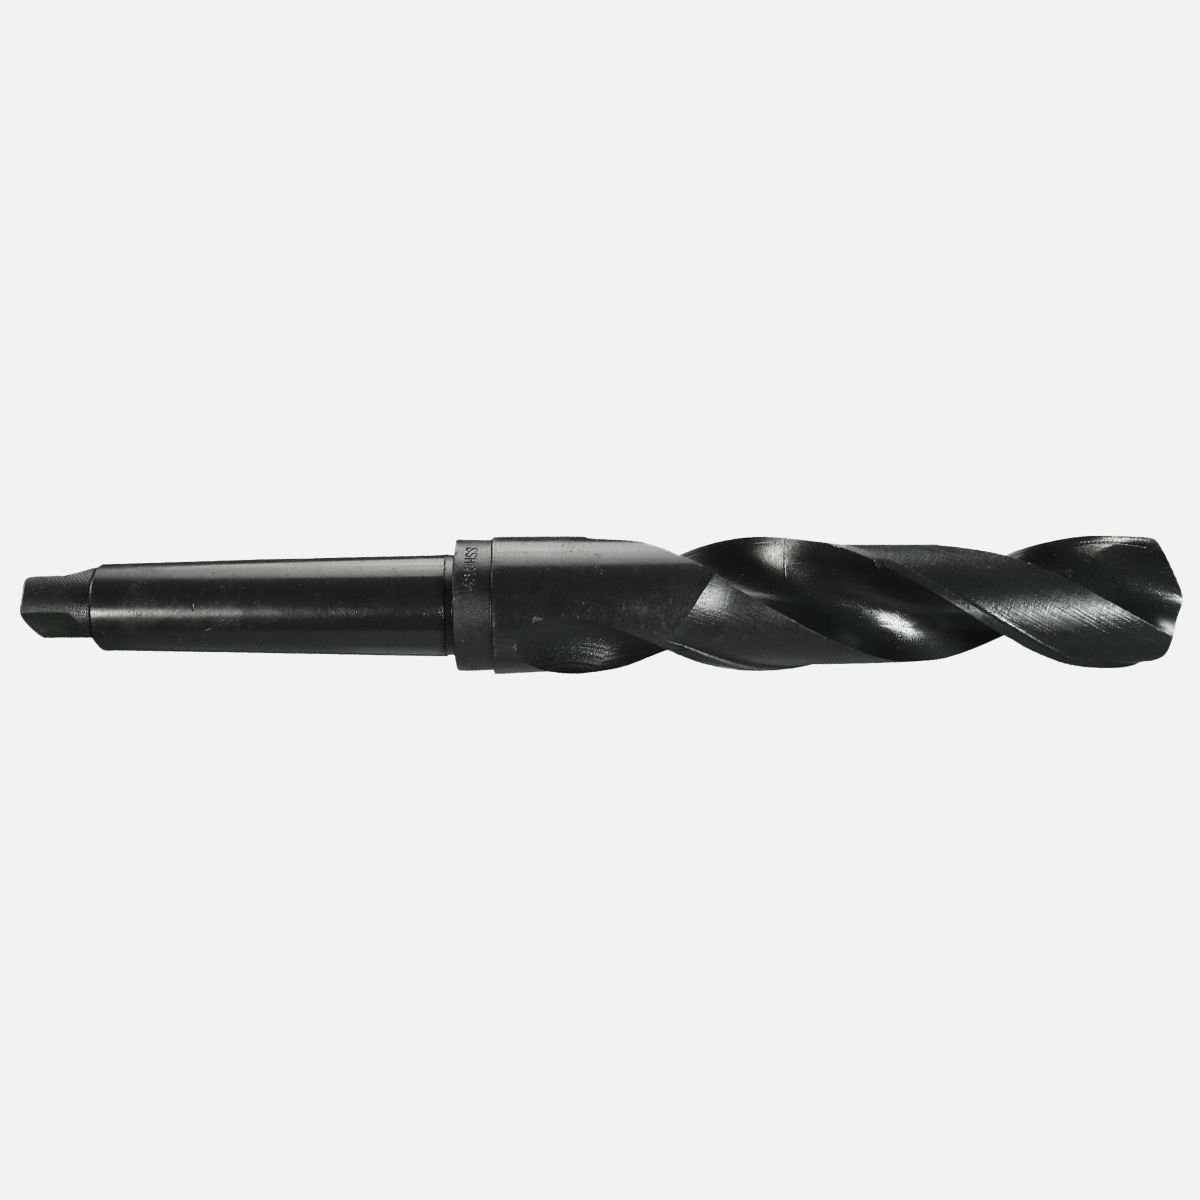 1 Spiralbohrer mit Morsekegel- Schaft DIN 345 42 mm